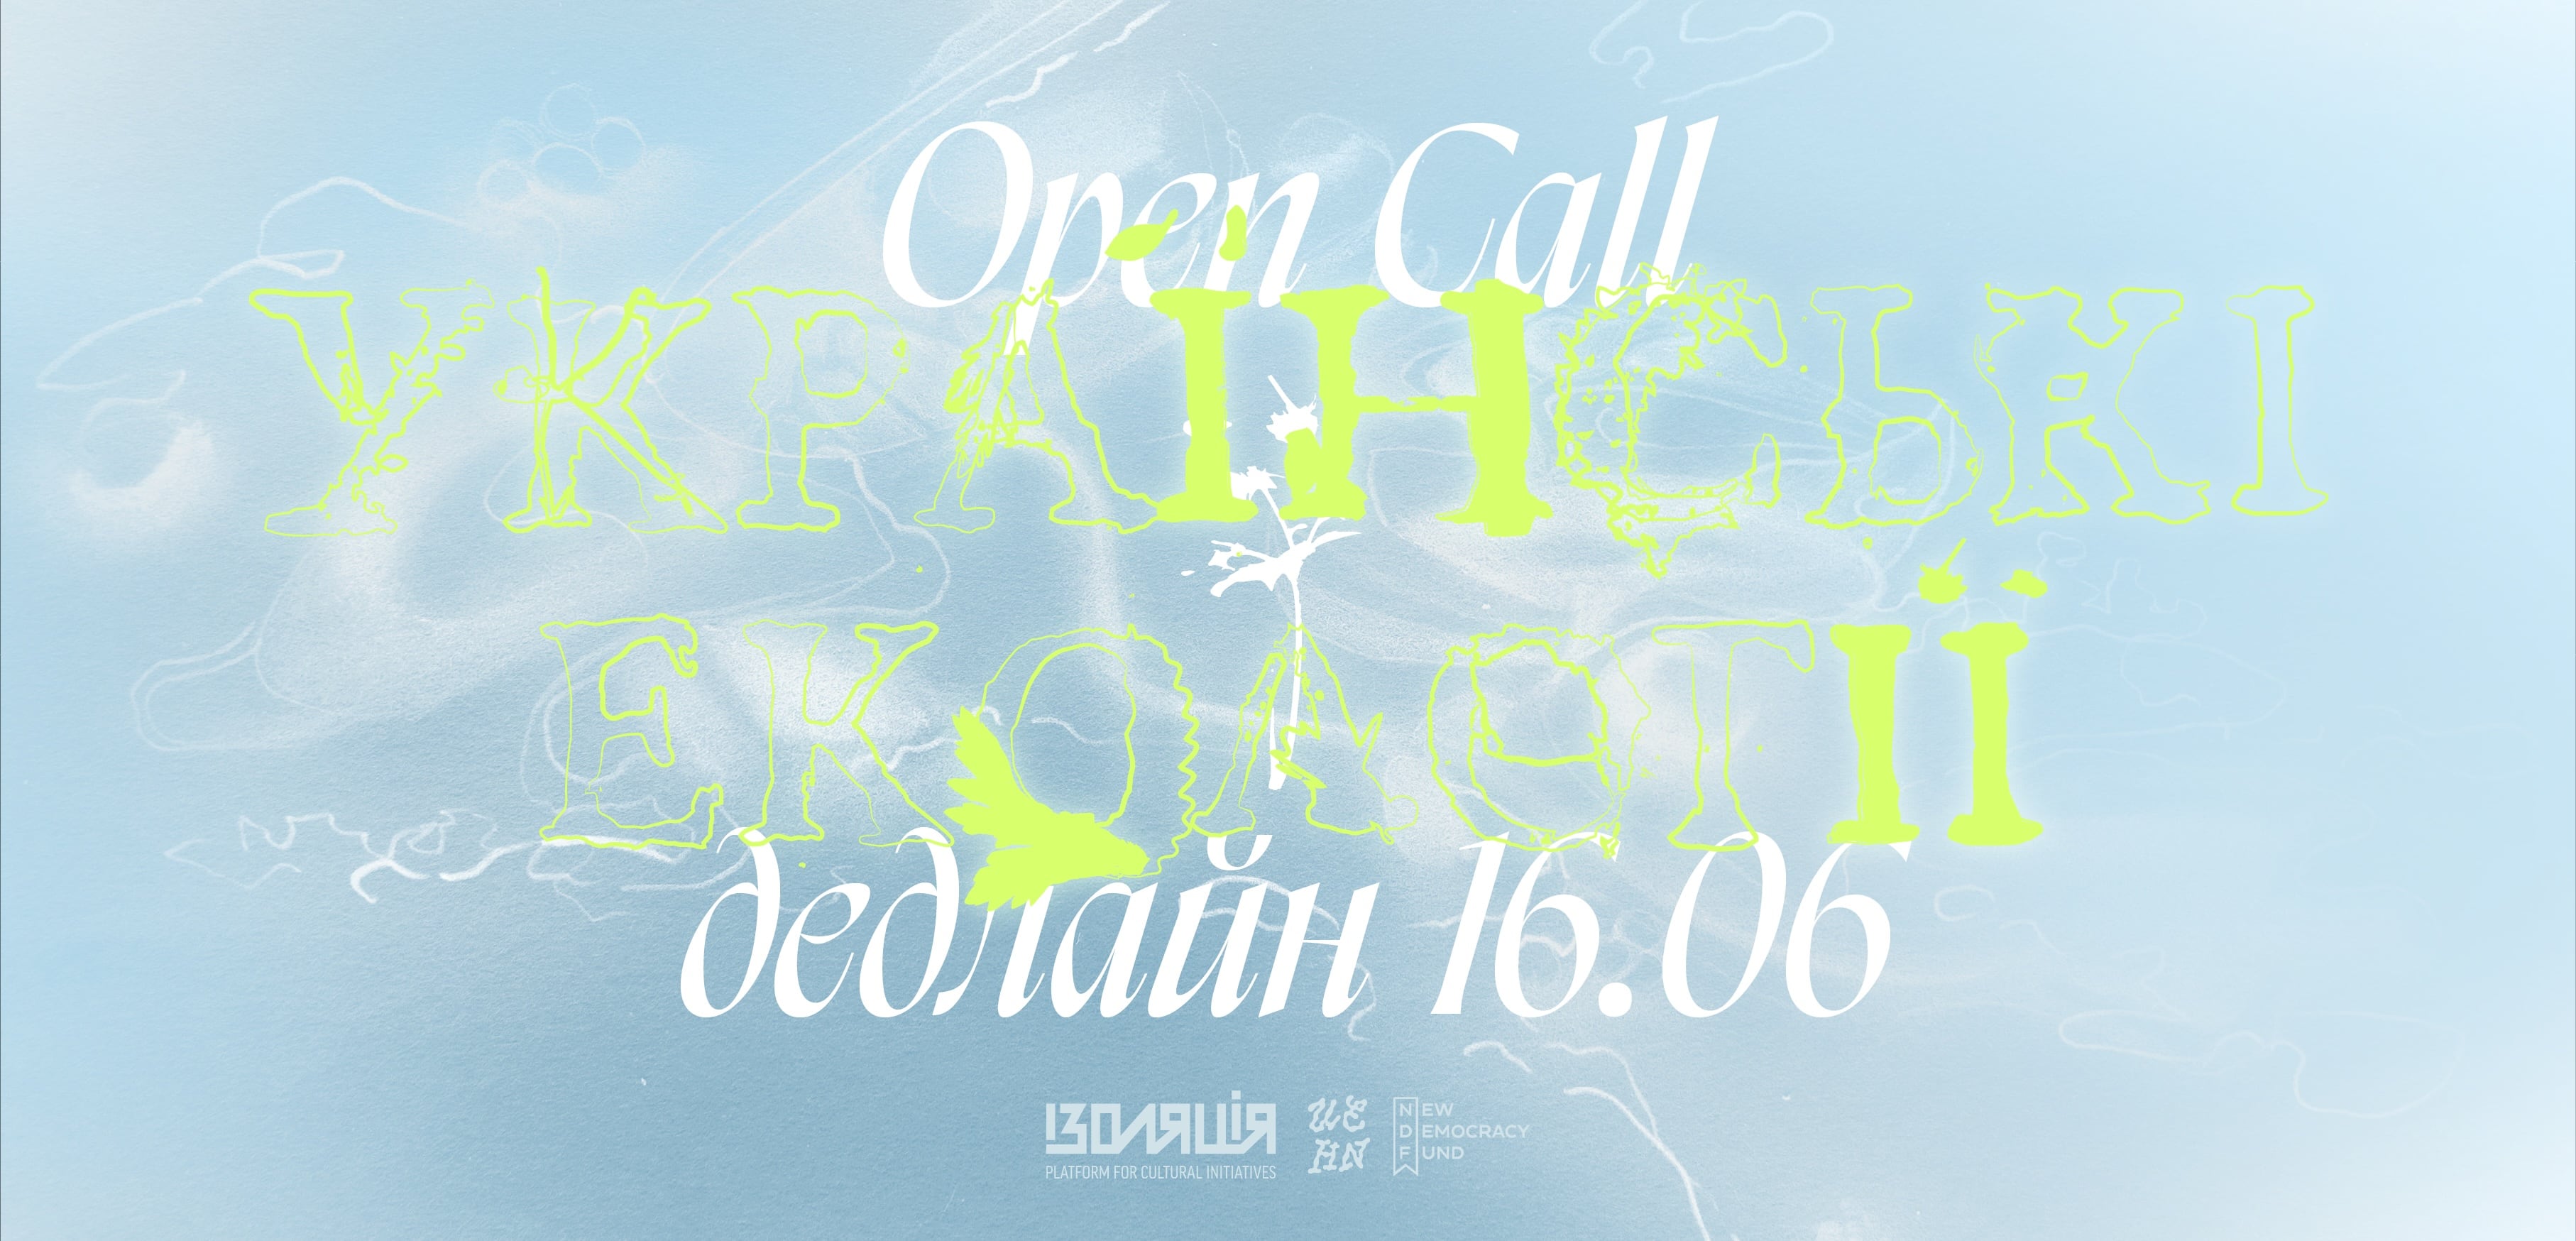 Українські екології: Open Call для мисткинь та митців